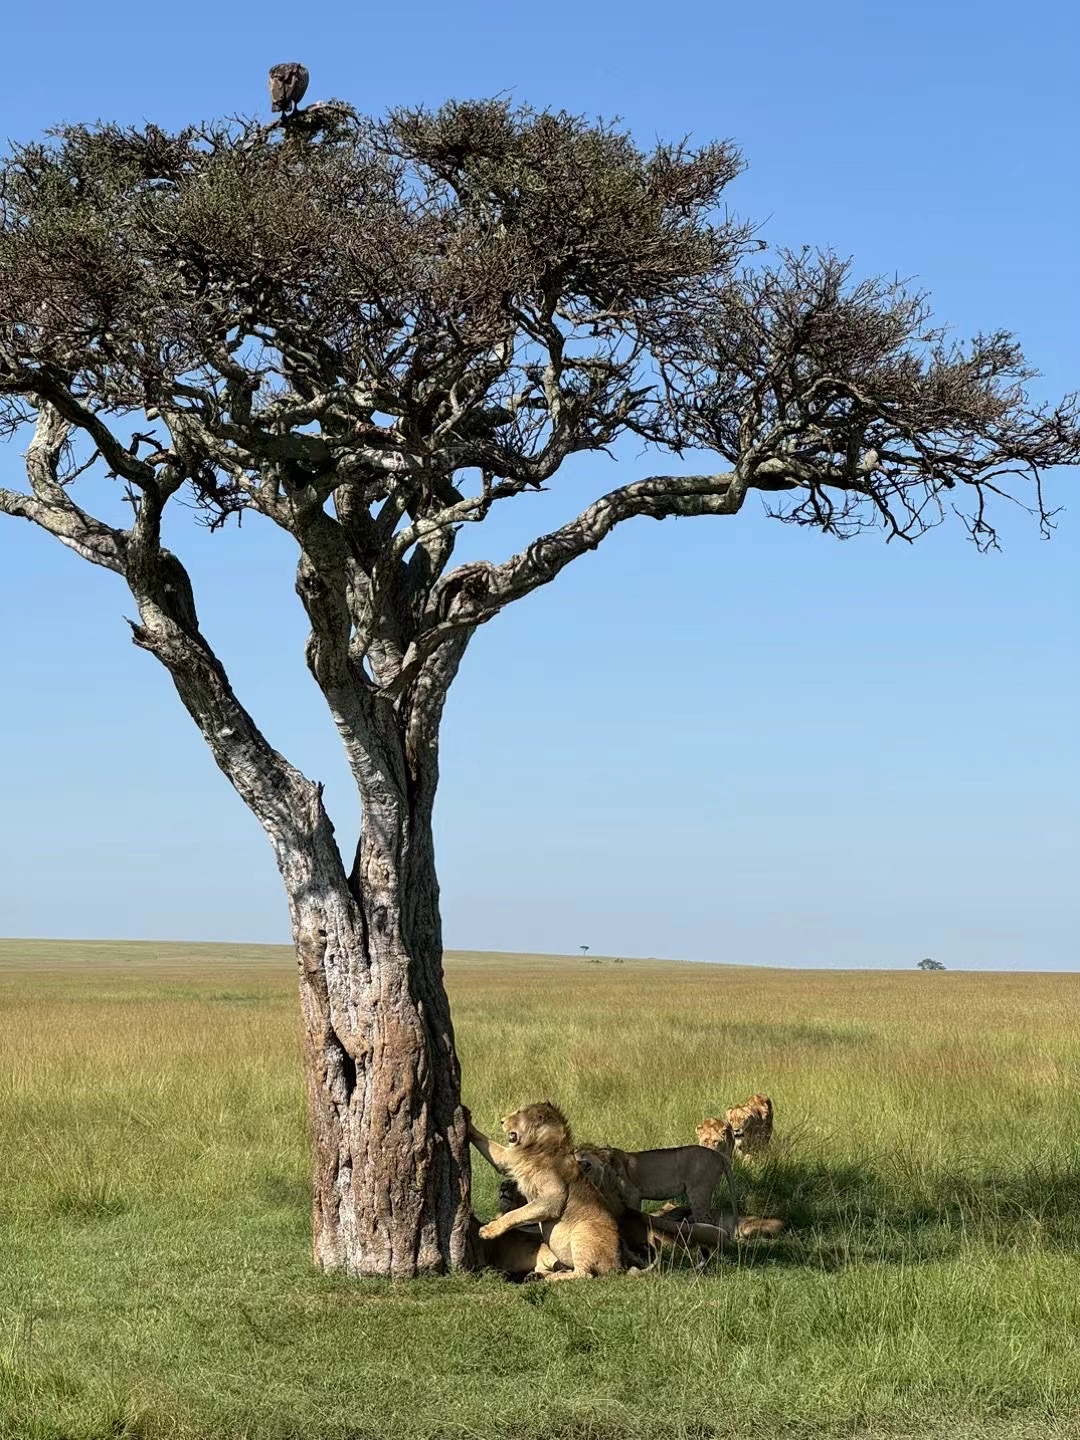 肯尼亚🇰🇪野生动物园随拍 肯尼亚·非洲